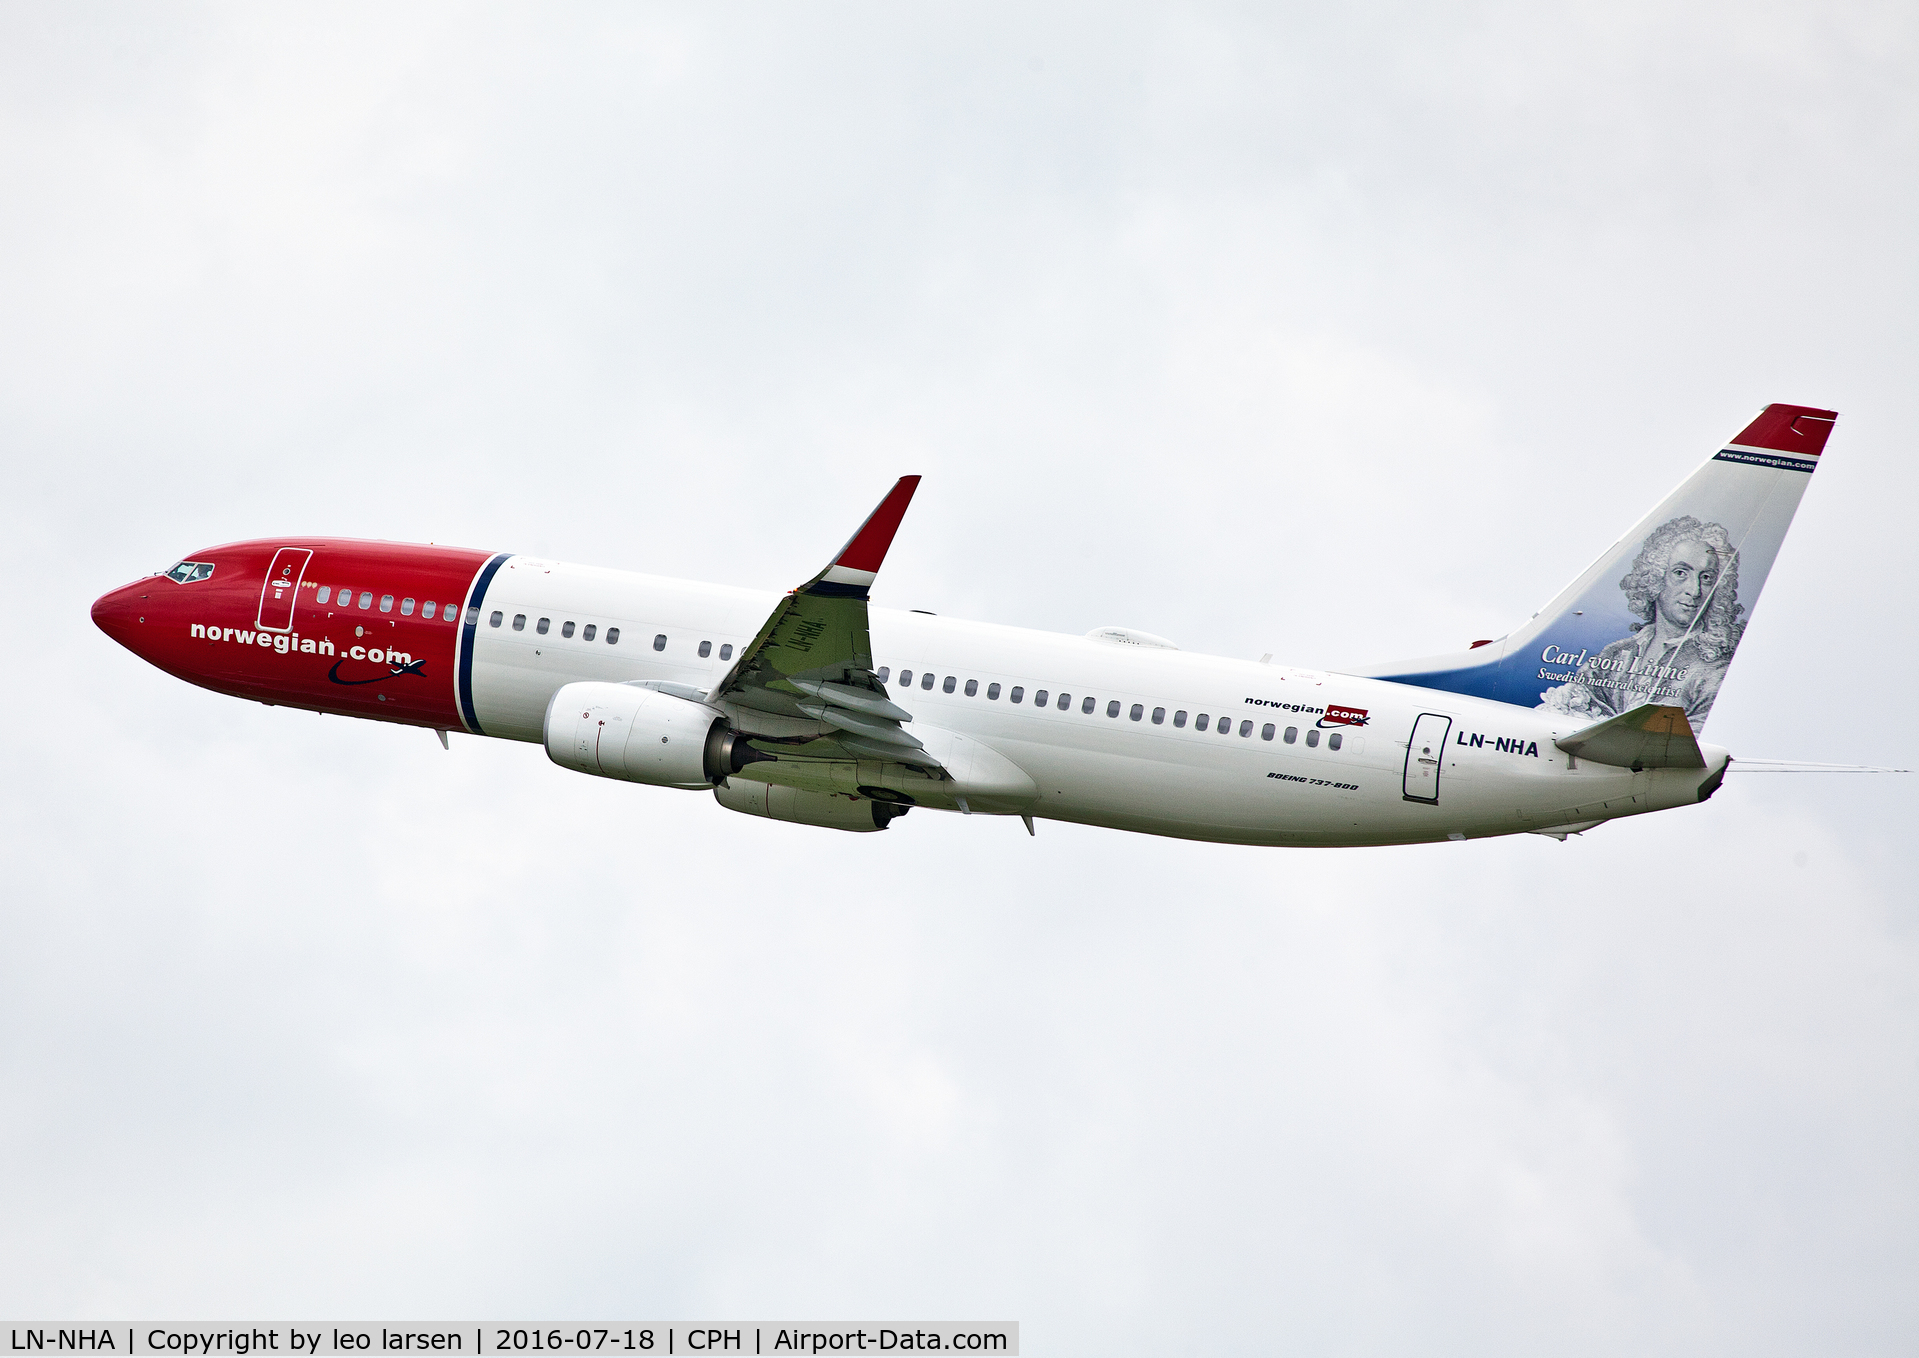 LN-NHA, 2014 Boeing 737-8JP C/N 41129, Copenhagen 18.7.16 with Carl von Linne`,swidish
scientist.on tail.